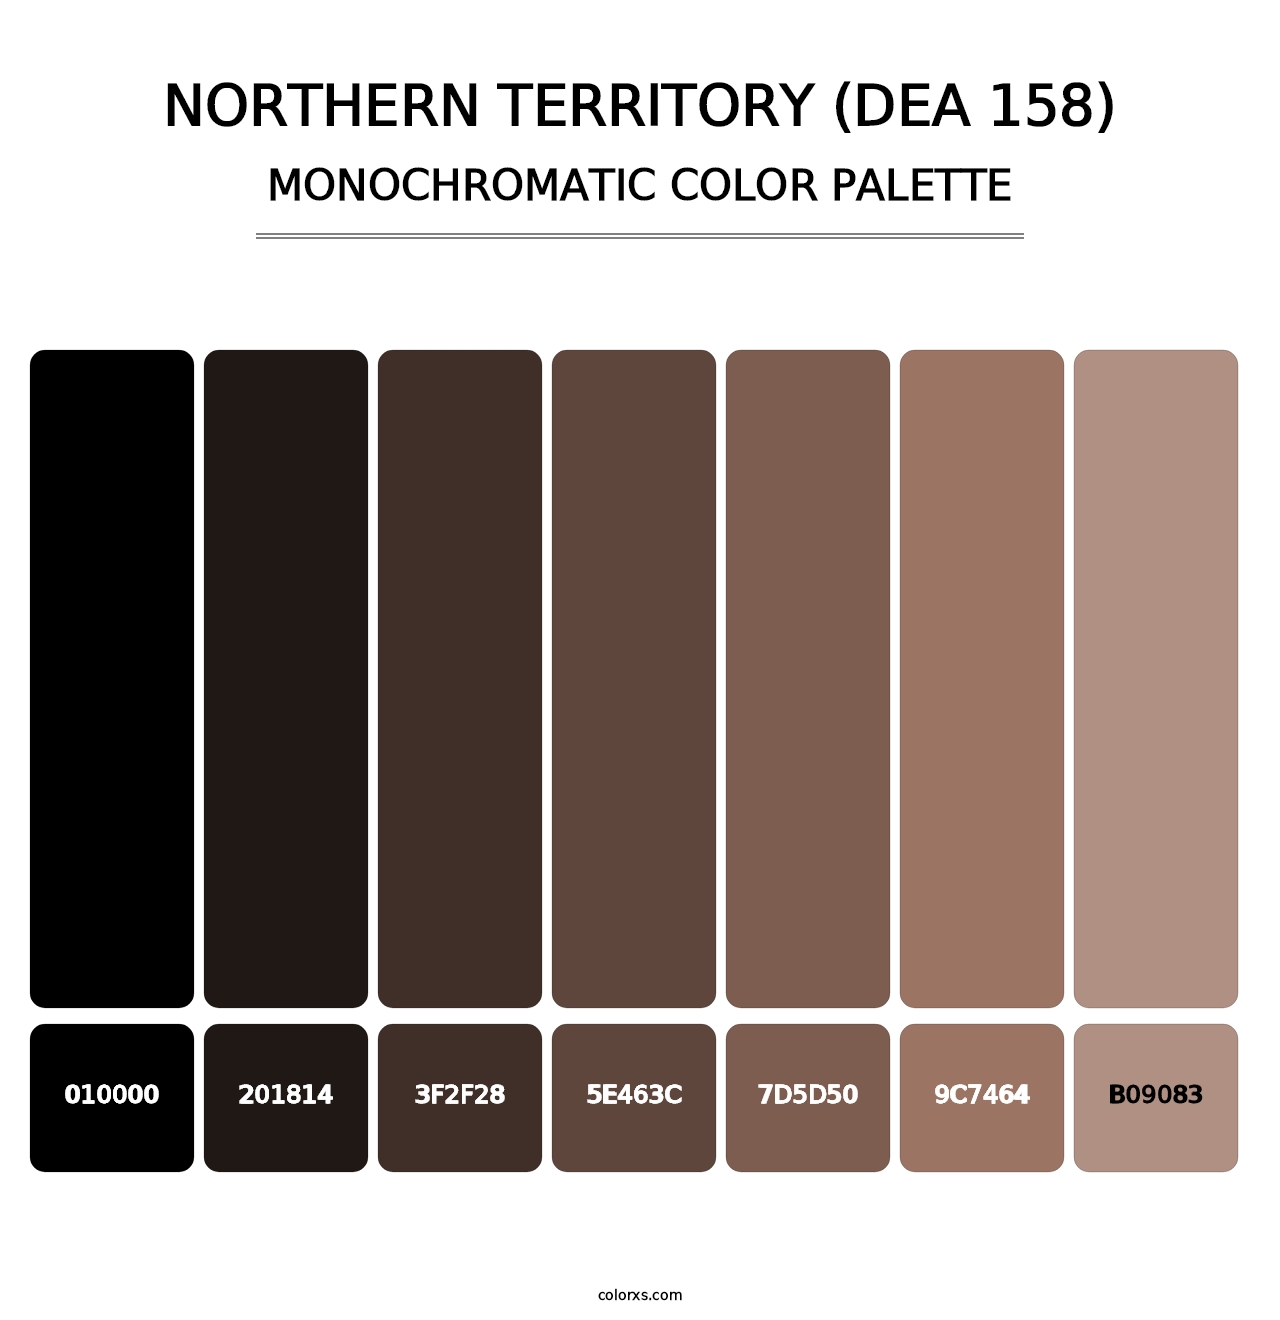 Northern Territory (DEA 158) - Monochromatic Color Palette